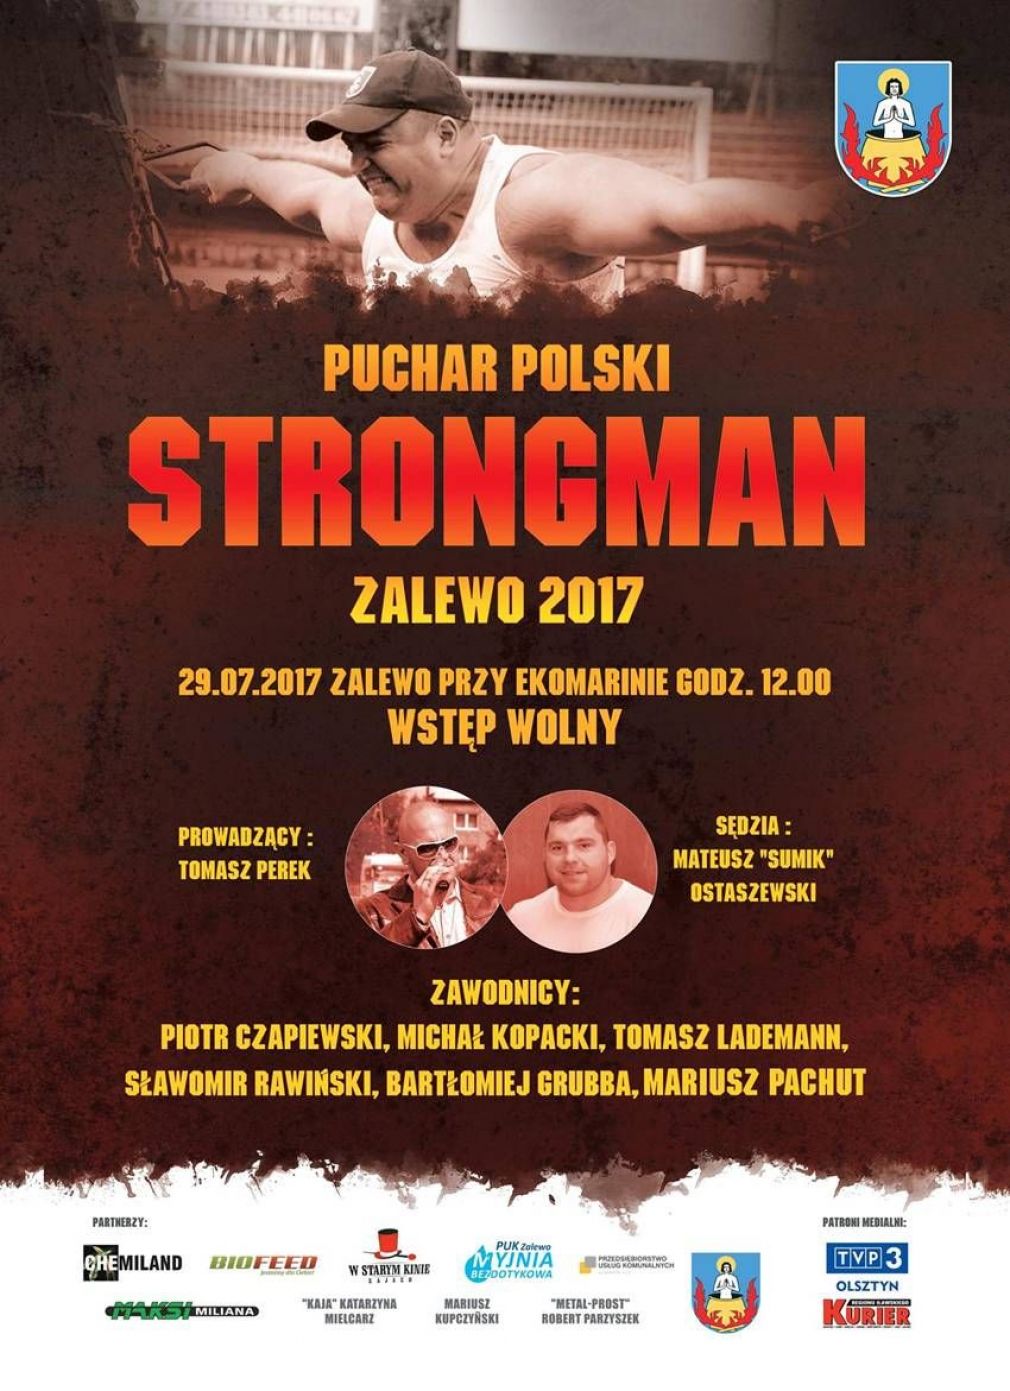 Puchar Polski Strongman